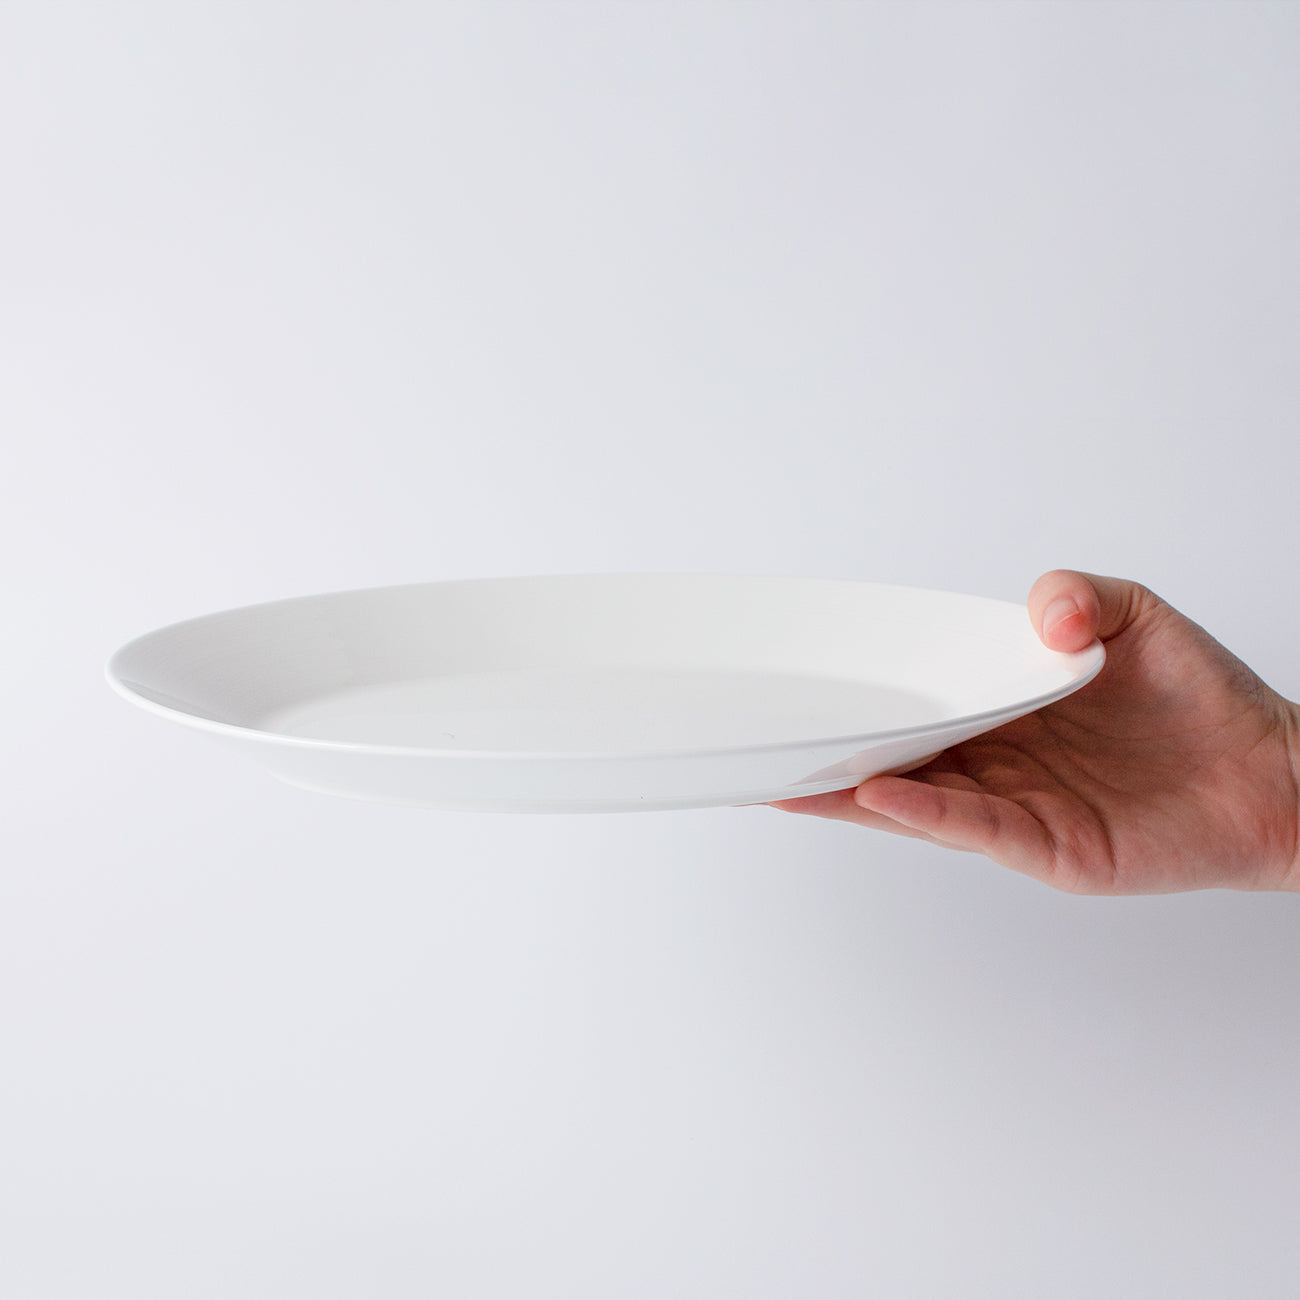 白いブランド食器|26cmオーバルプレート|EXQUISITE|ニッコー公式オンラインショップ